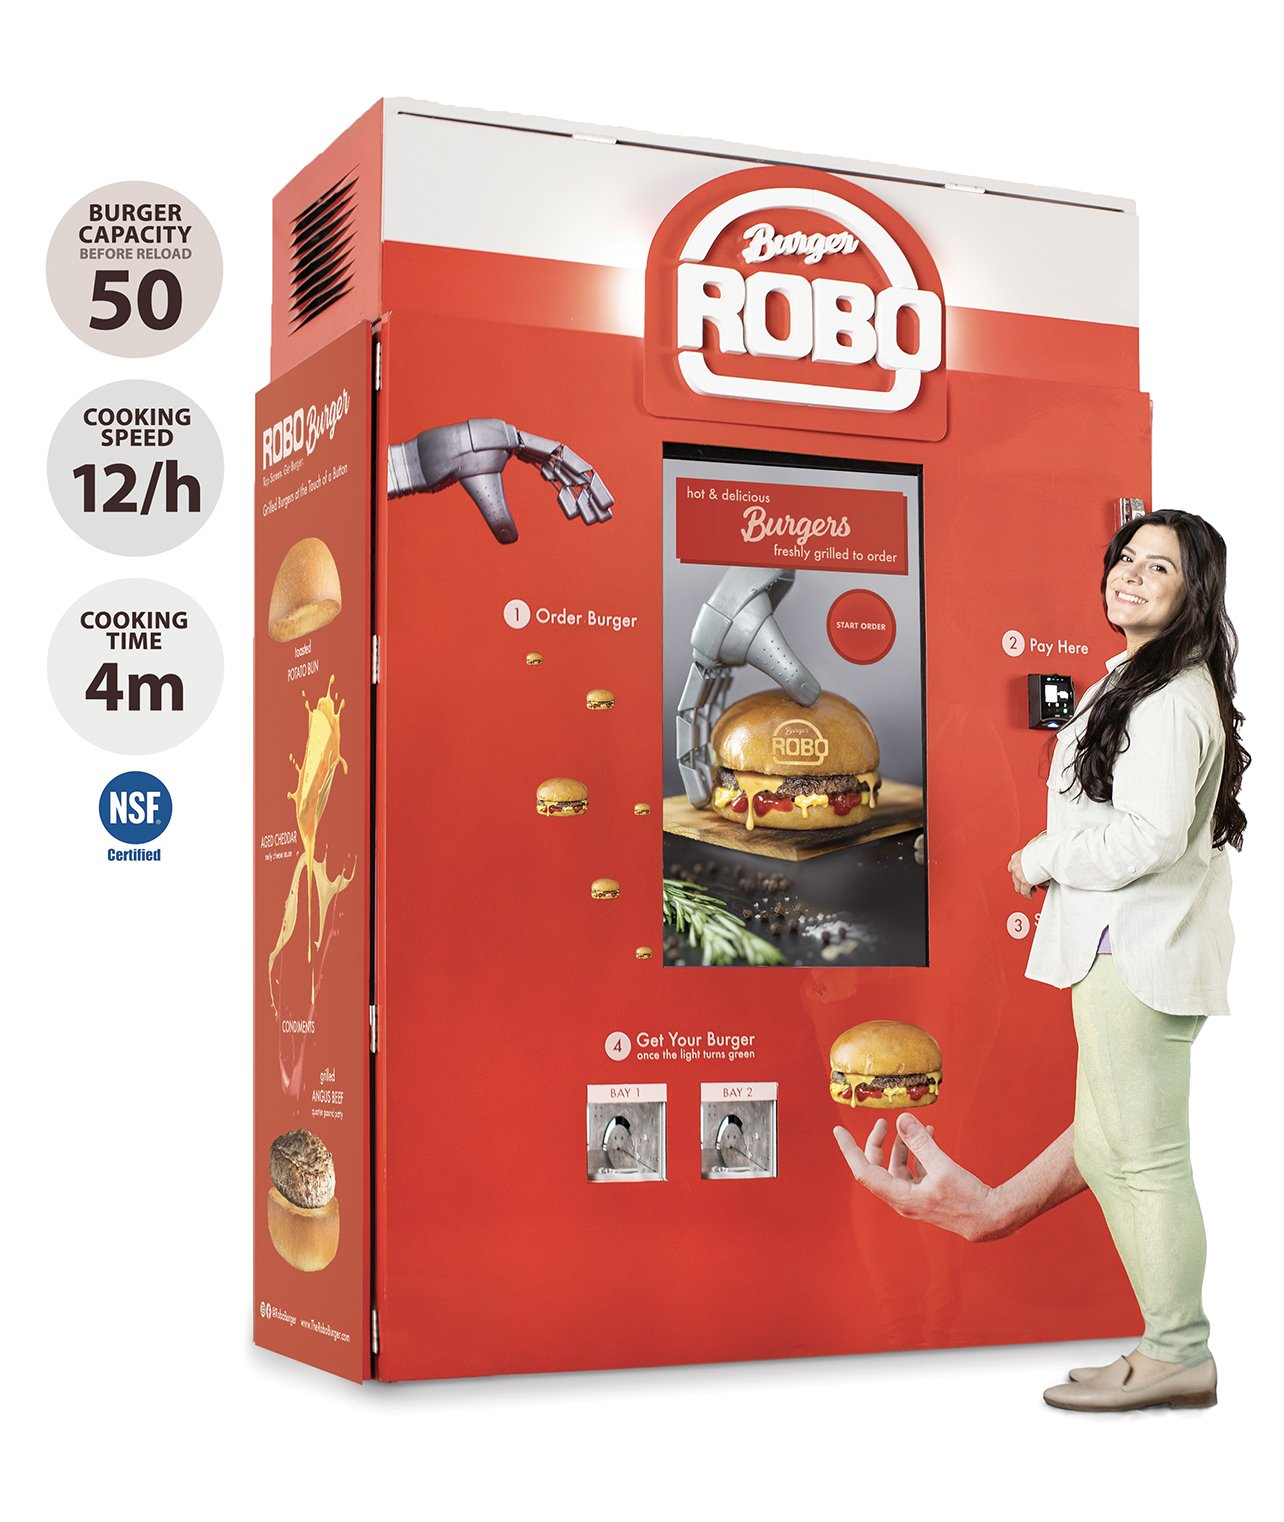 Burger vending machine gets Shark Tank boost